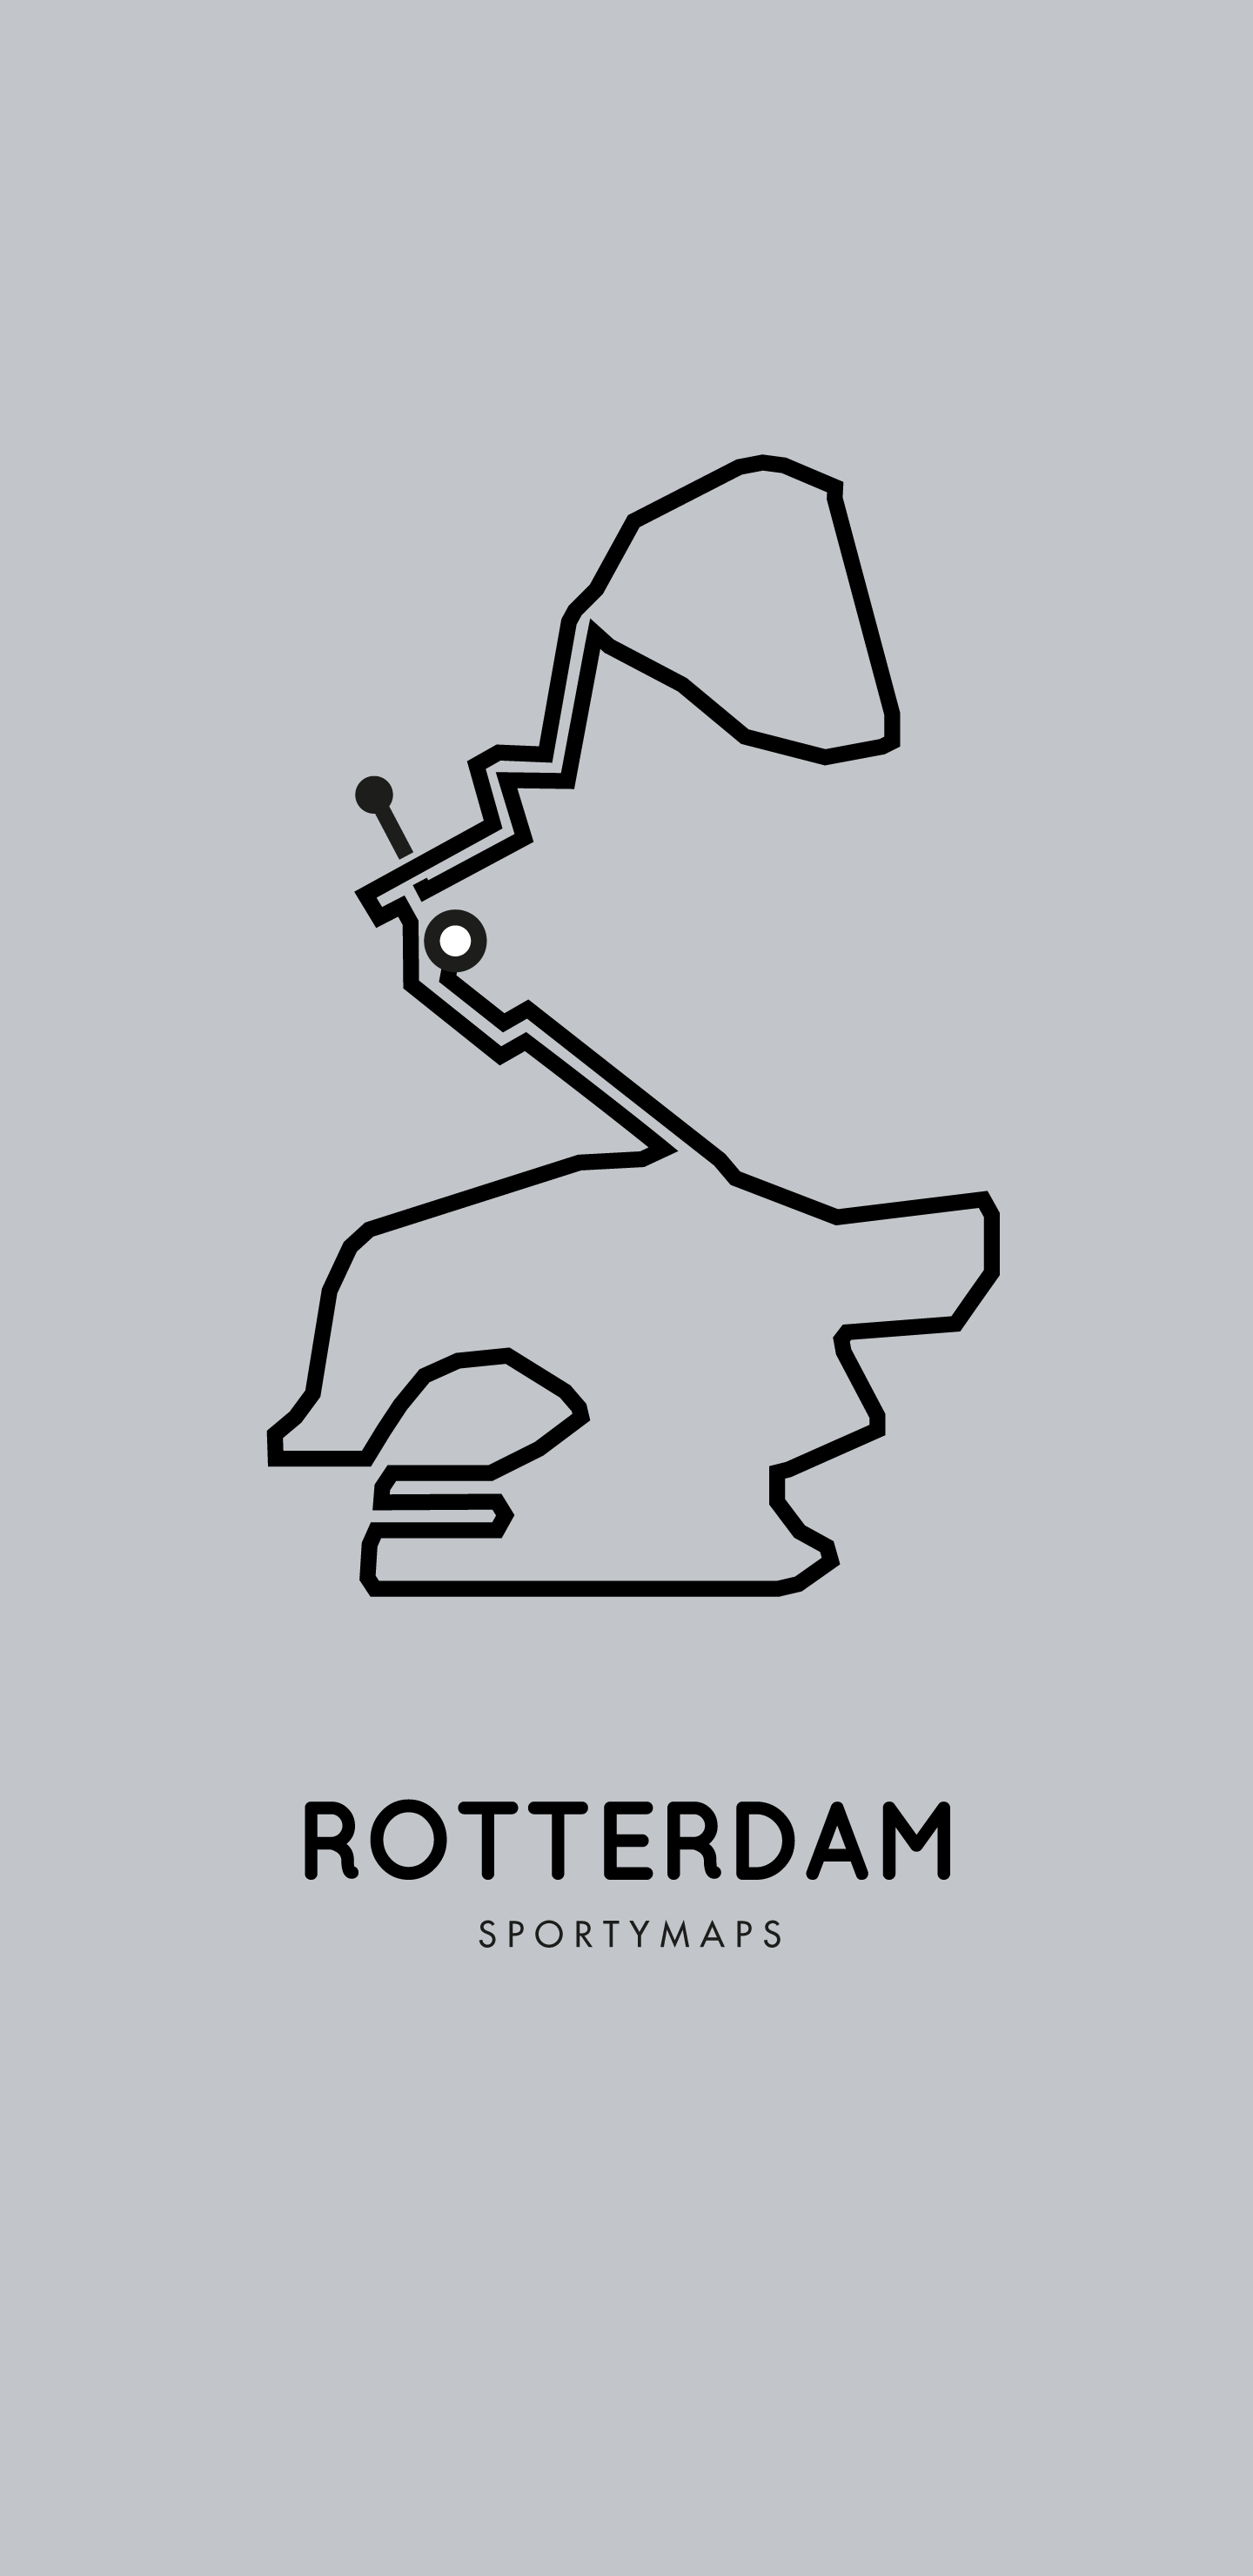 Sportymaps-Rotterdam-marathon-gray